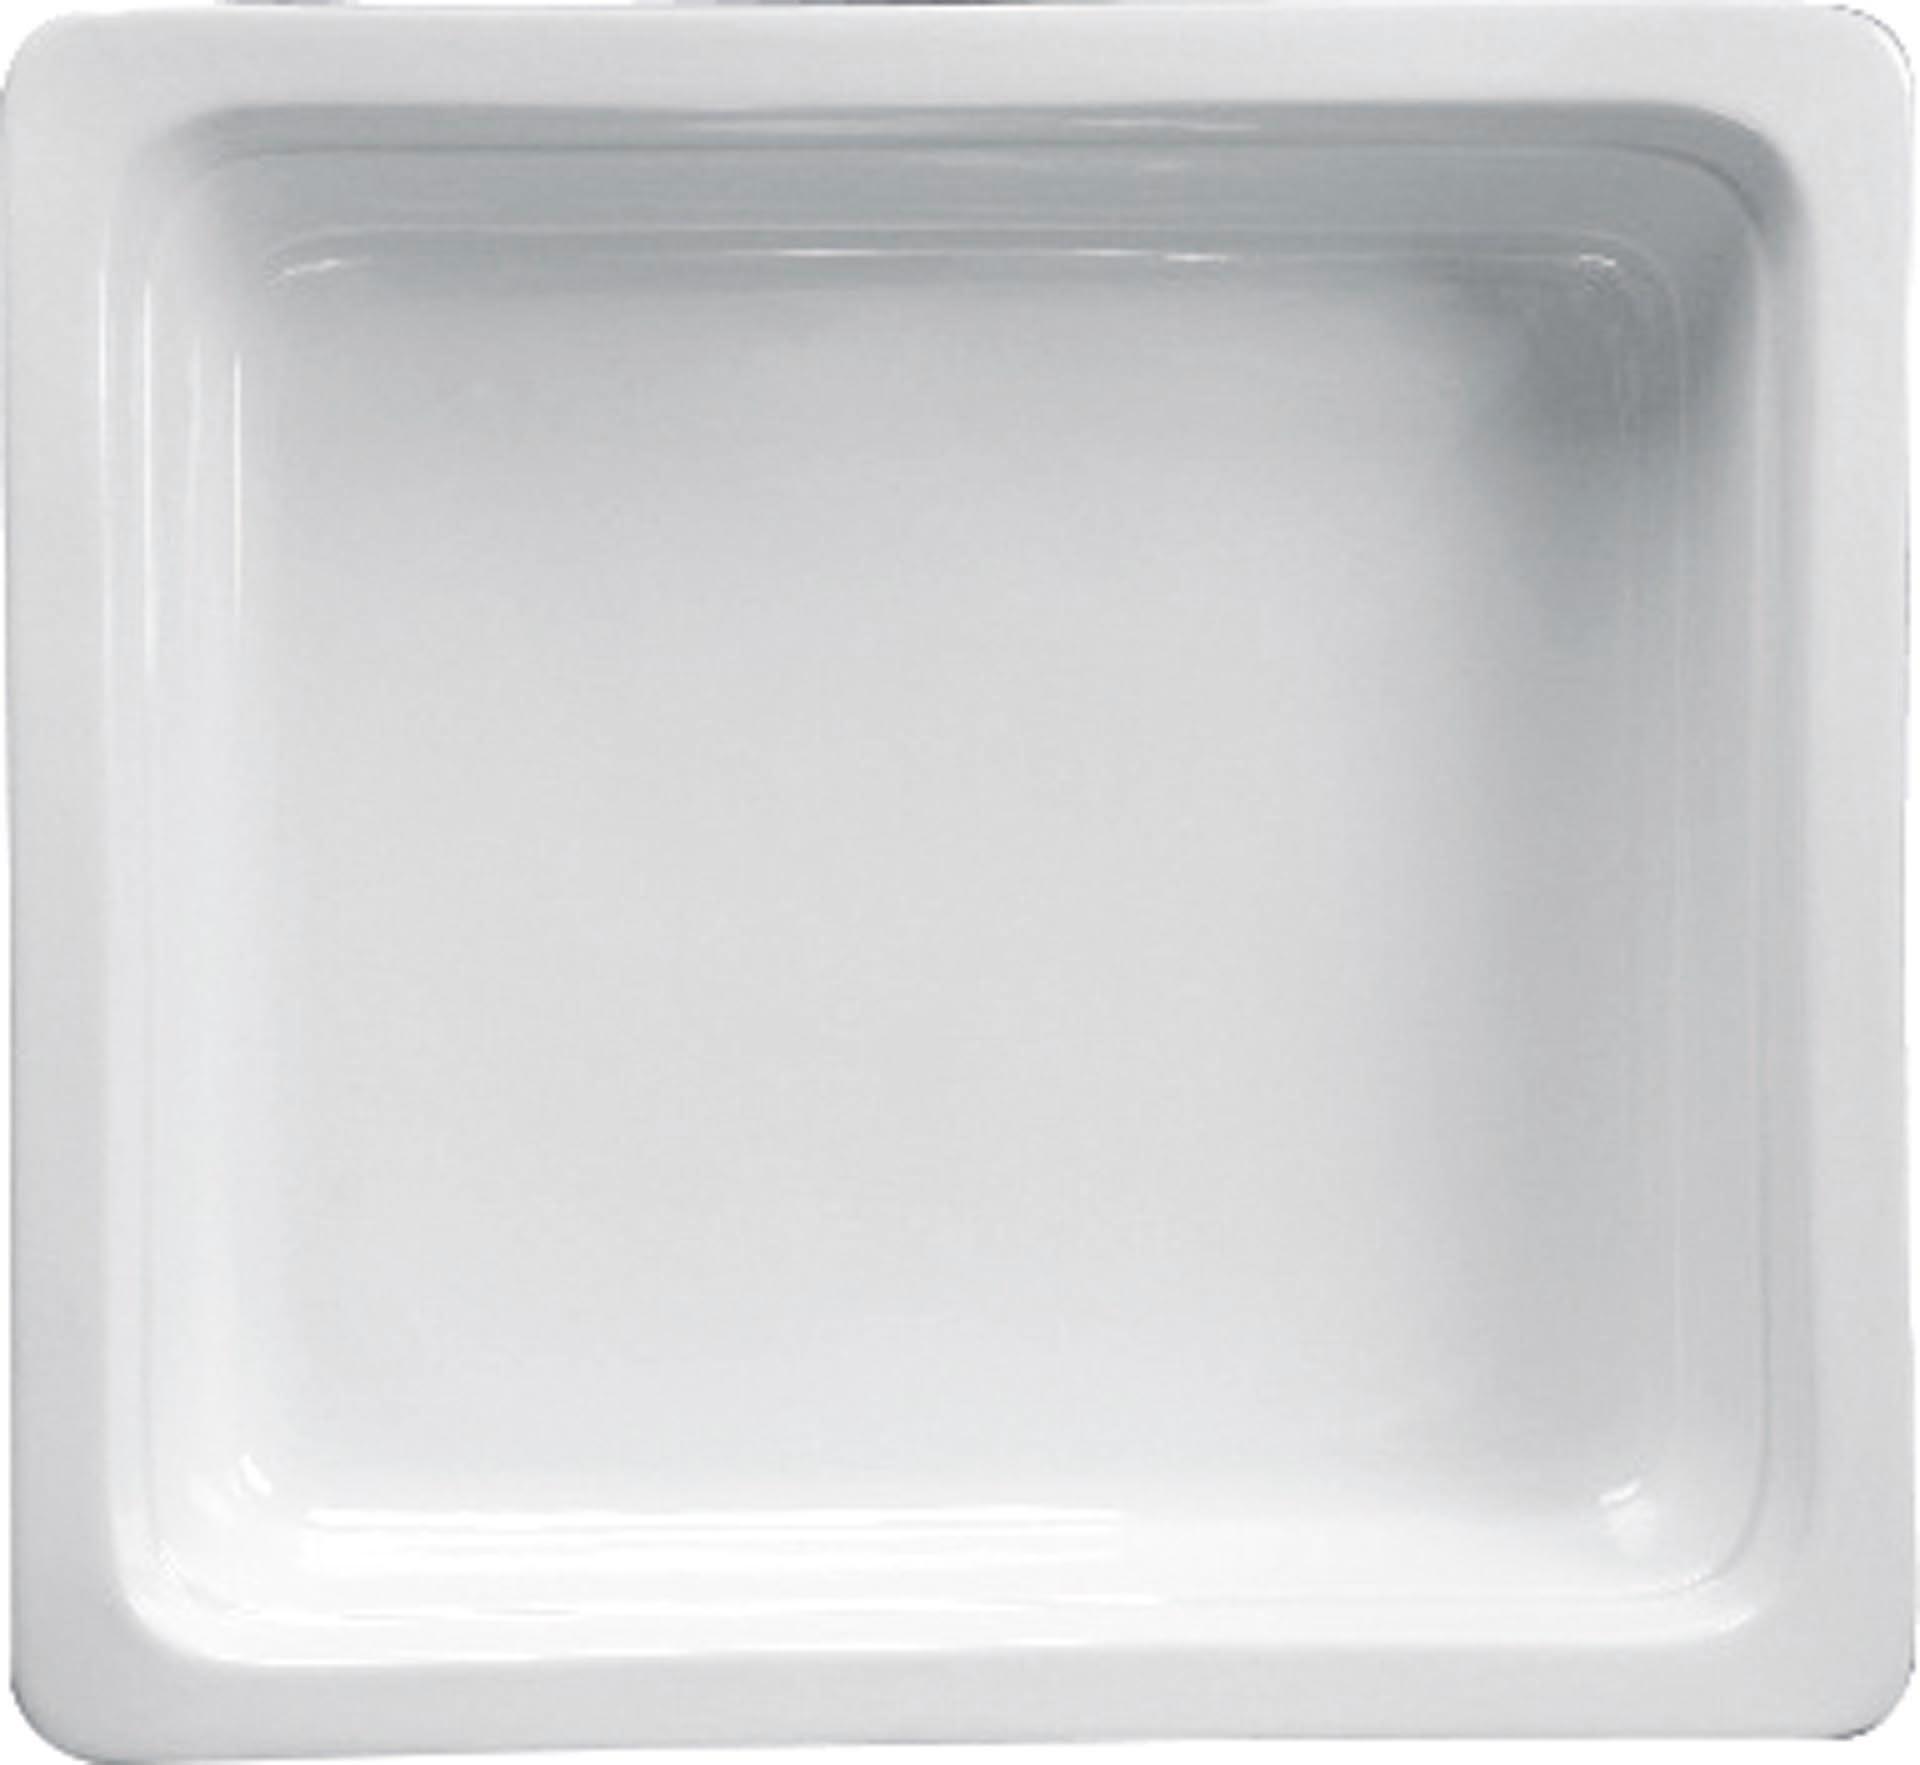 GN-Behälter Porzellan weiss GN 2/3-65 Inhalt: 4,3 Liter